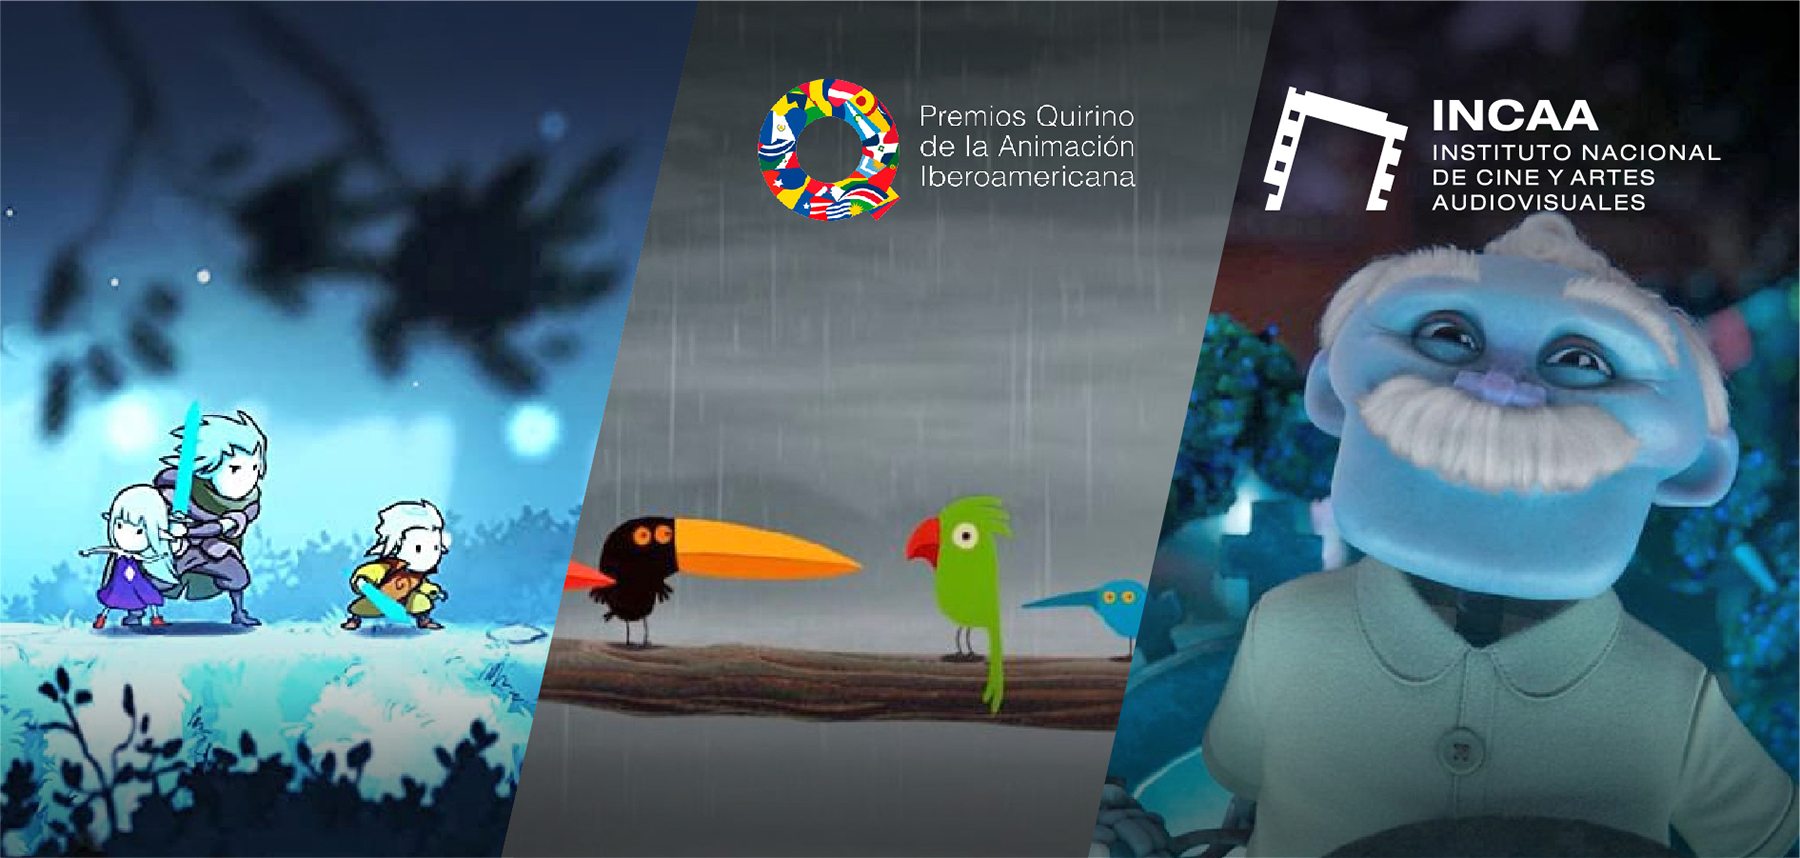 Premios Quirino de Animación Iberoamericana